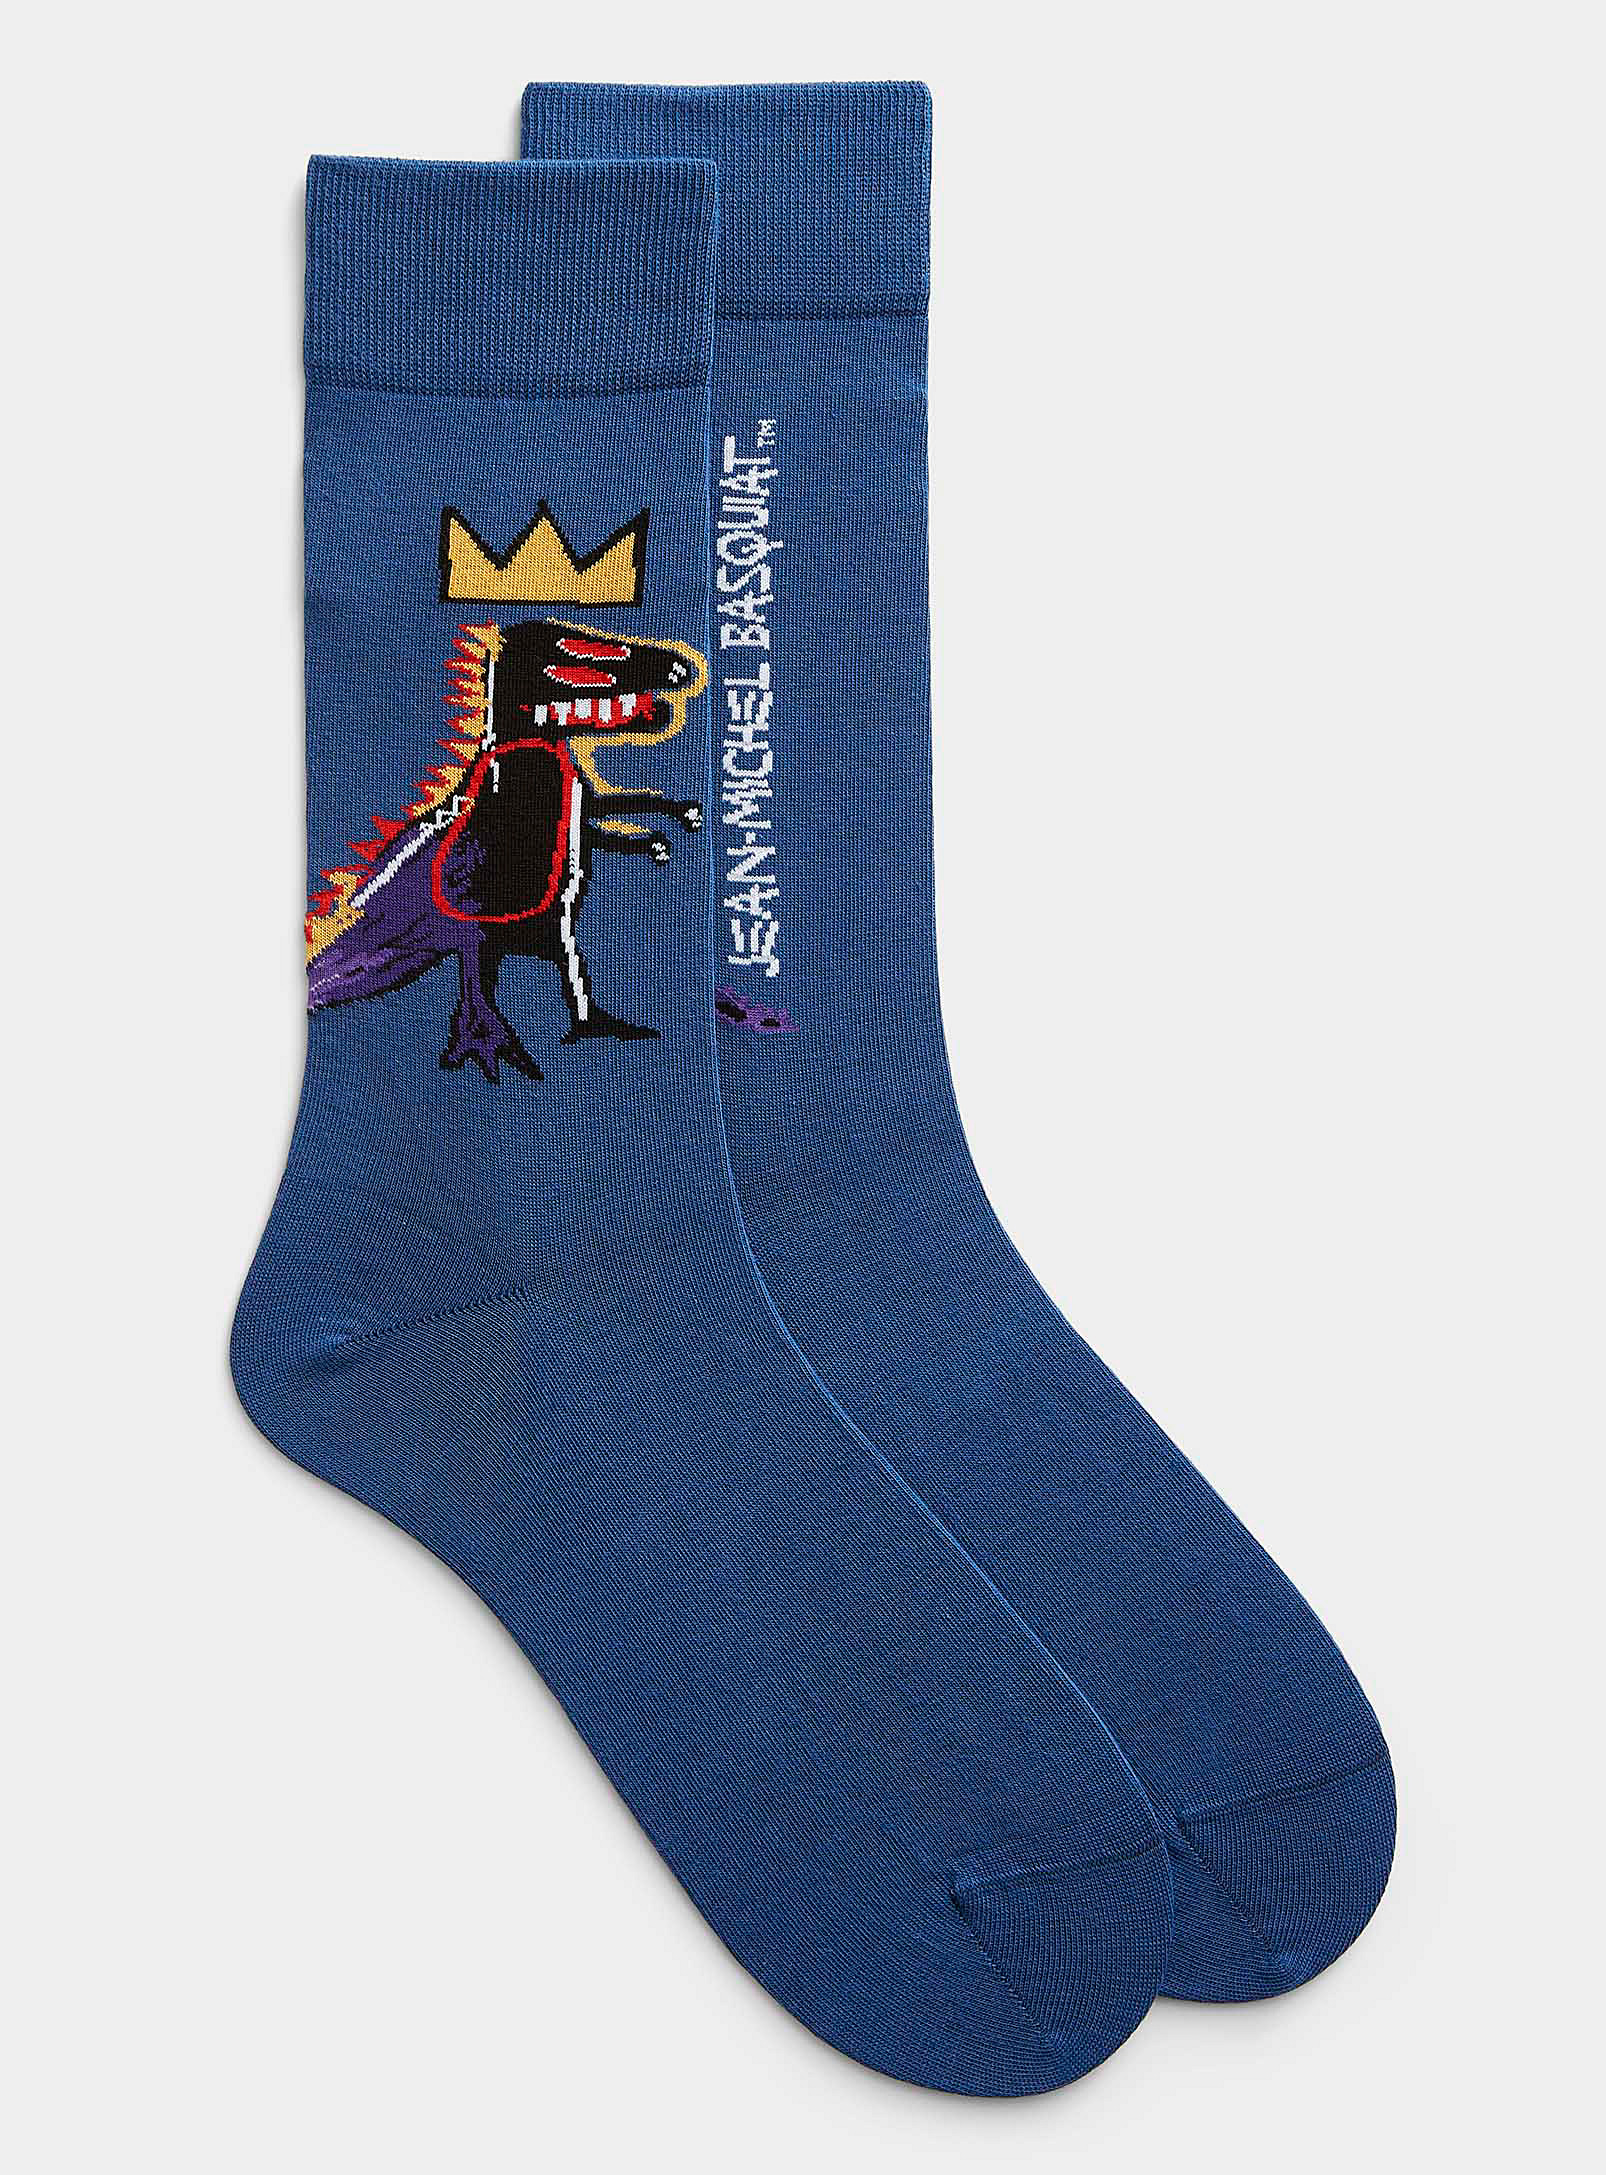 Jimmy Lion - Men's Basquiat Pez Dispenser socks